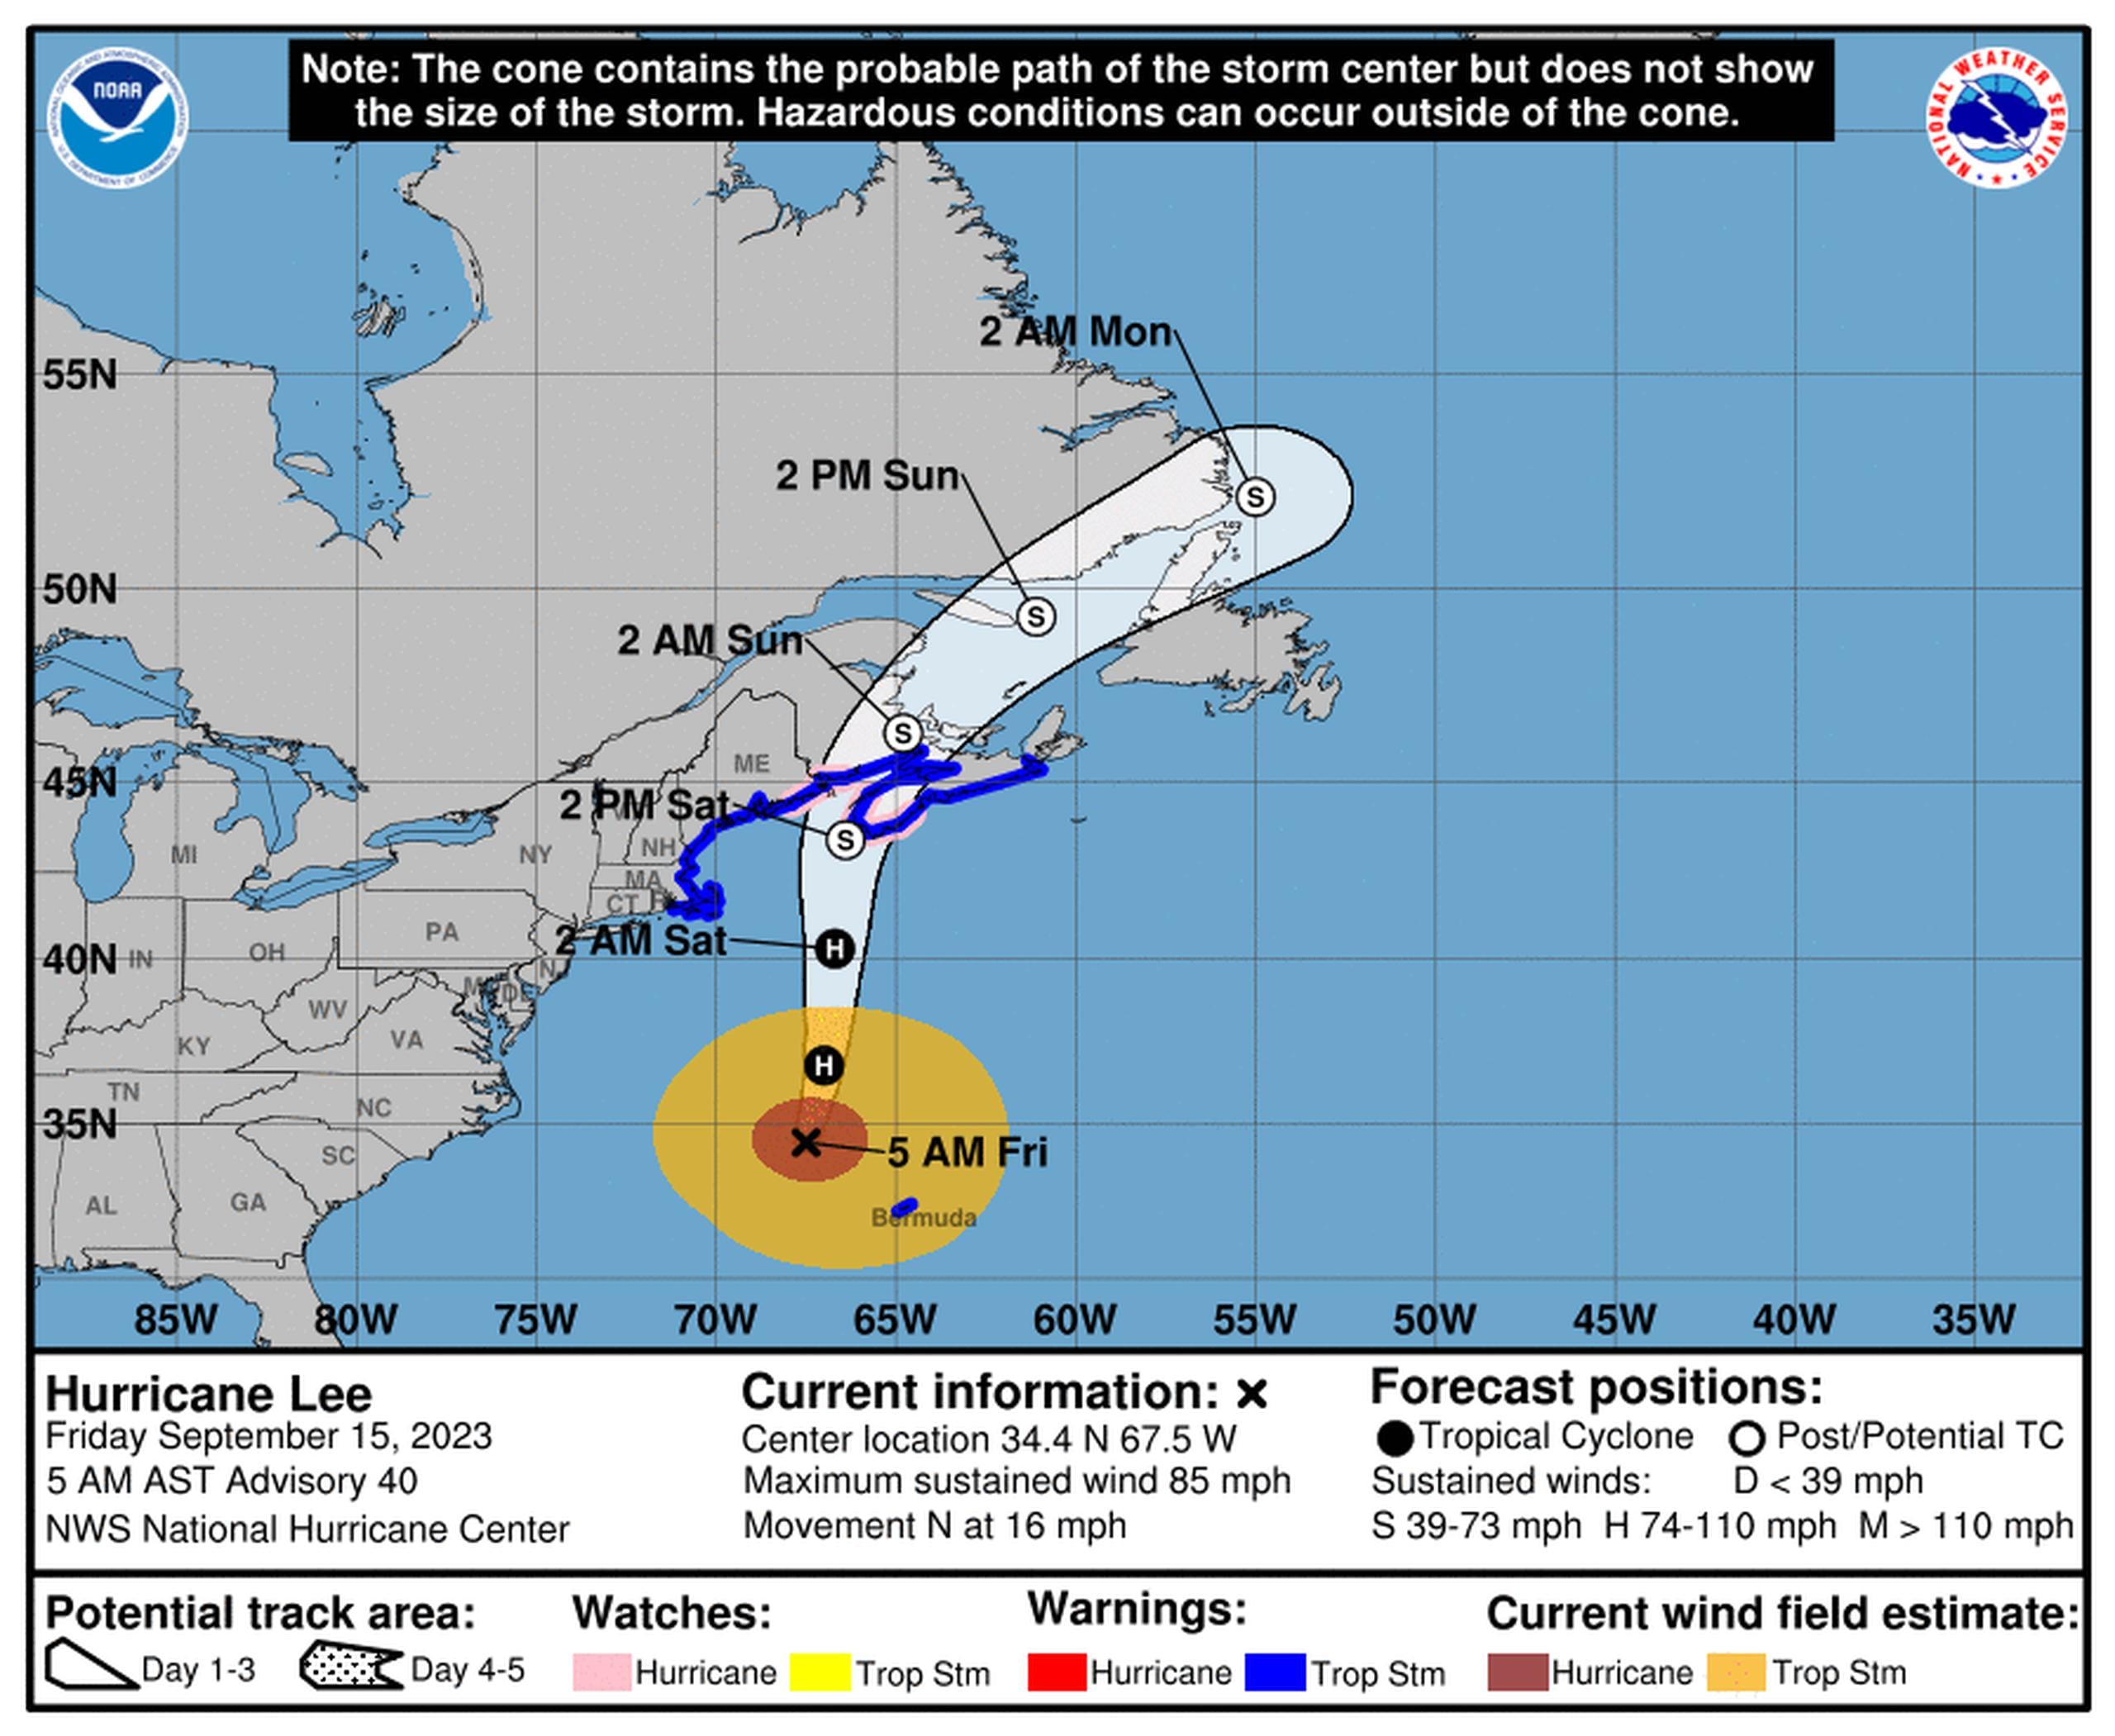 Pronóstico del huracán Lee emitido a las 5:00 de la mañana del 15 de septiembre de 2023.